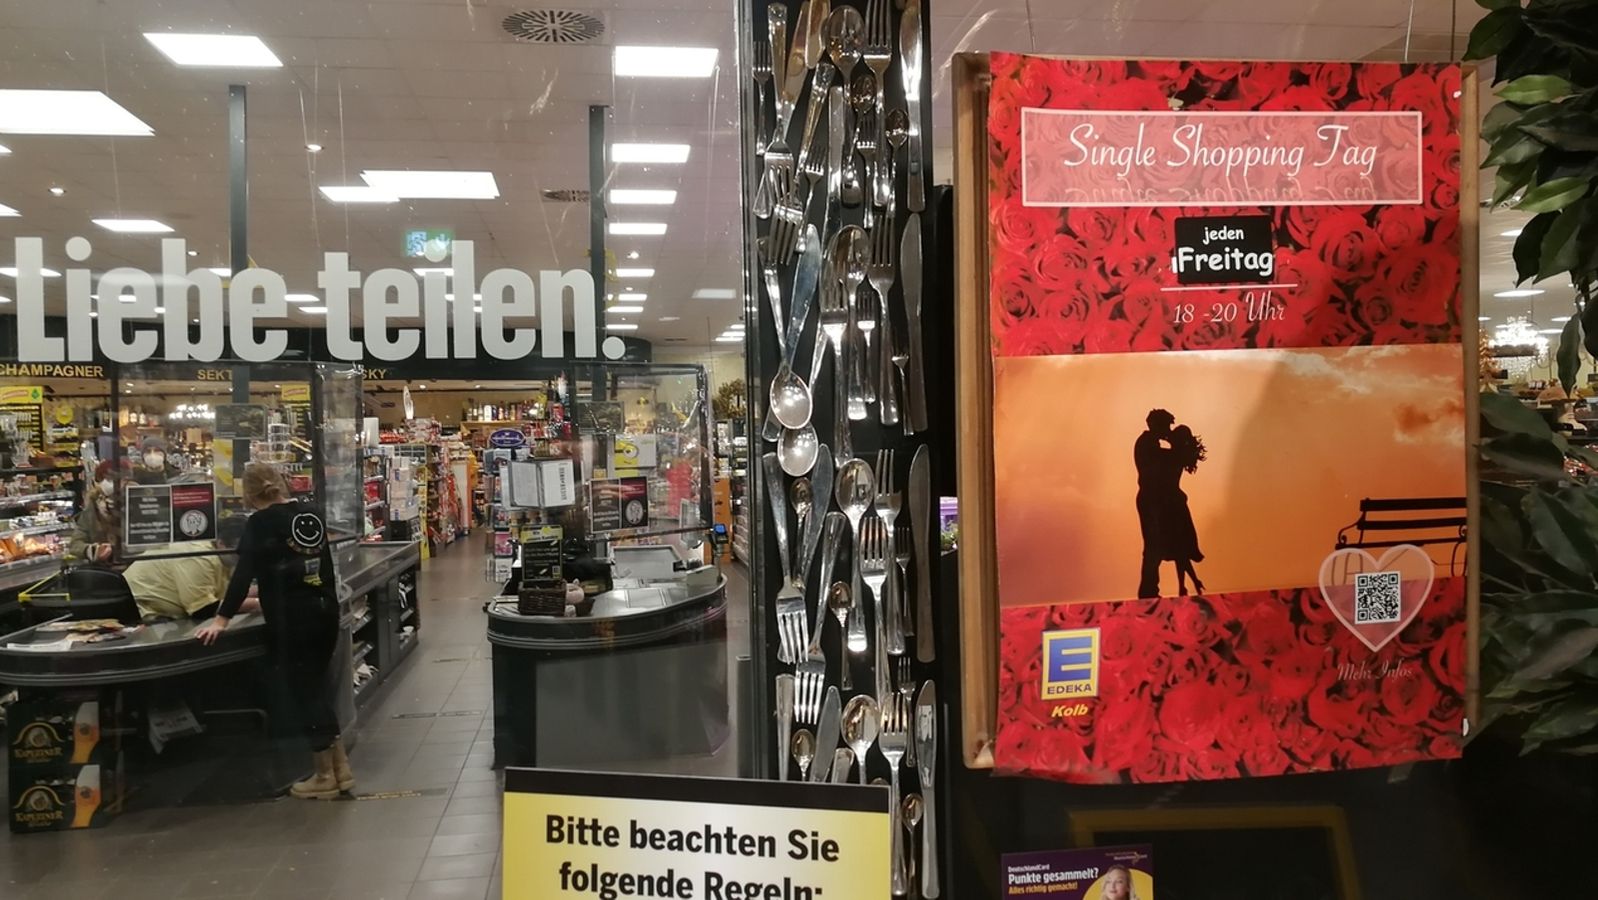 Partnersuche und Corona: Single Shopping in Volkacher Supermarkt | BR24